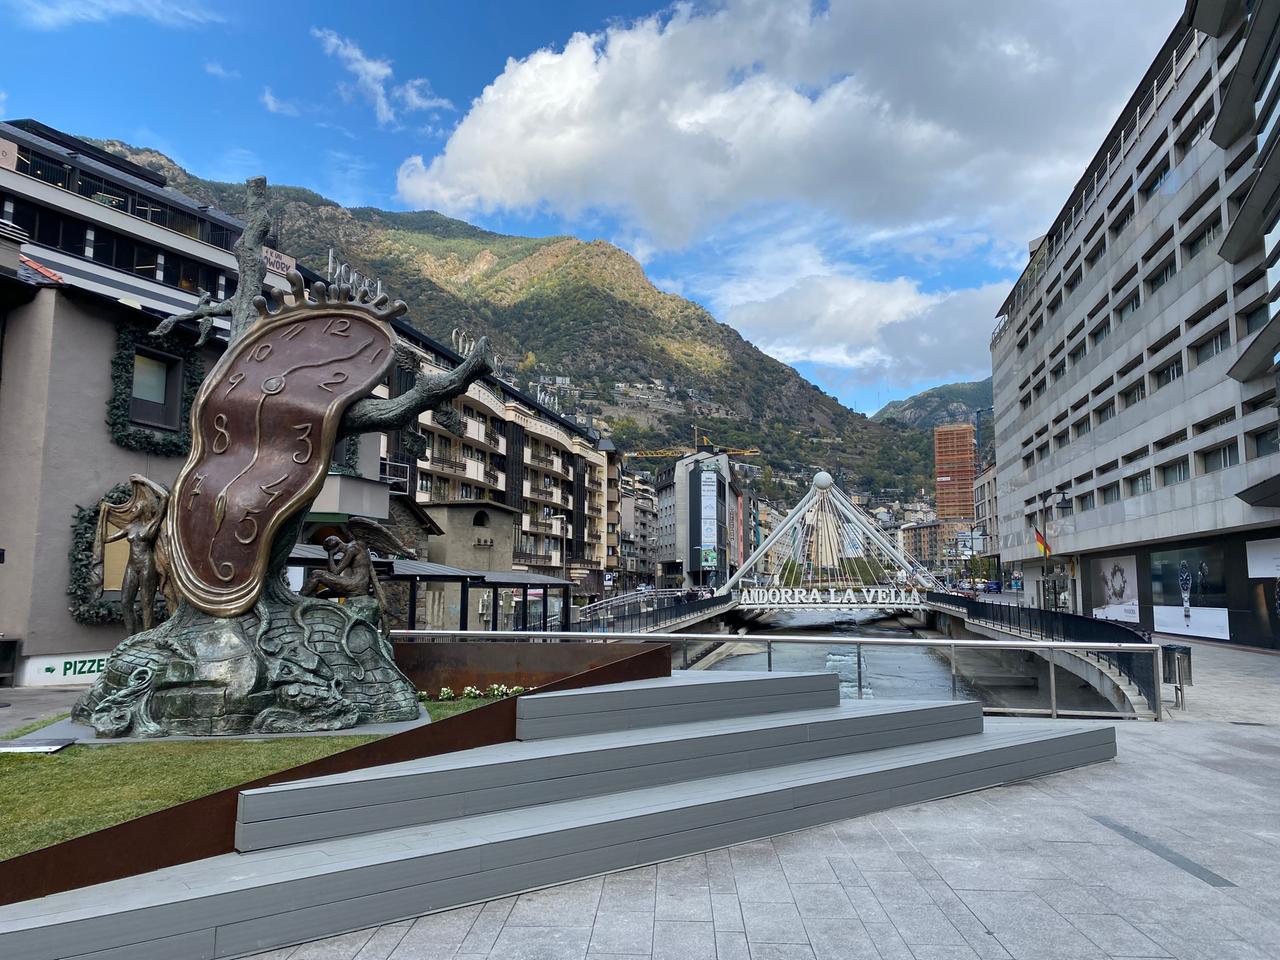 Das bekannteste Fotomotiv von Andorra - die Fußgängerzone inmitten der Berge, im Vordergrund eine große schiefe Uhr und über dem Fluß der Schriftzug "Andorra La Vella".